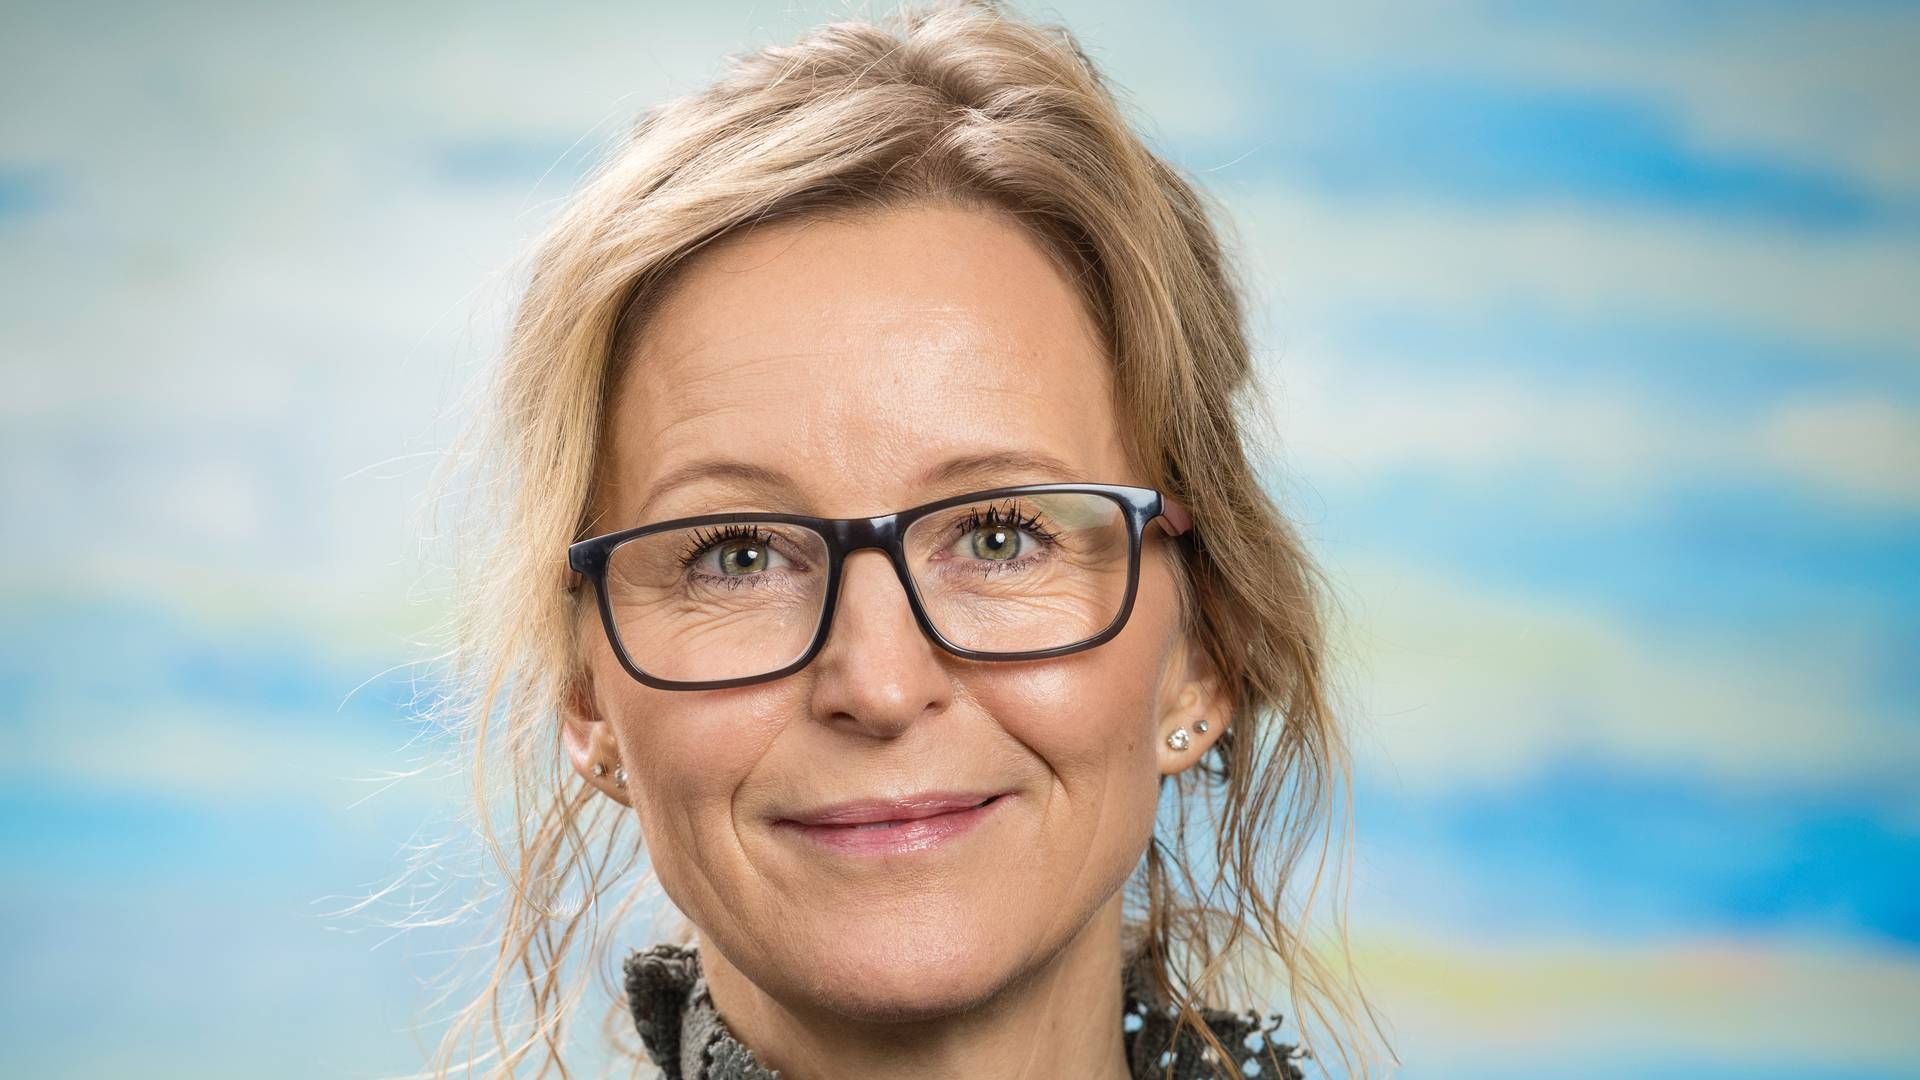 Annelise Arboe Sommer skal som ny adm. direktør for busoperatøren Umove stå i spidsen for en strategiændring. | Foto: Umove, Pr